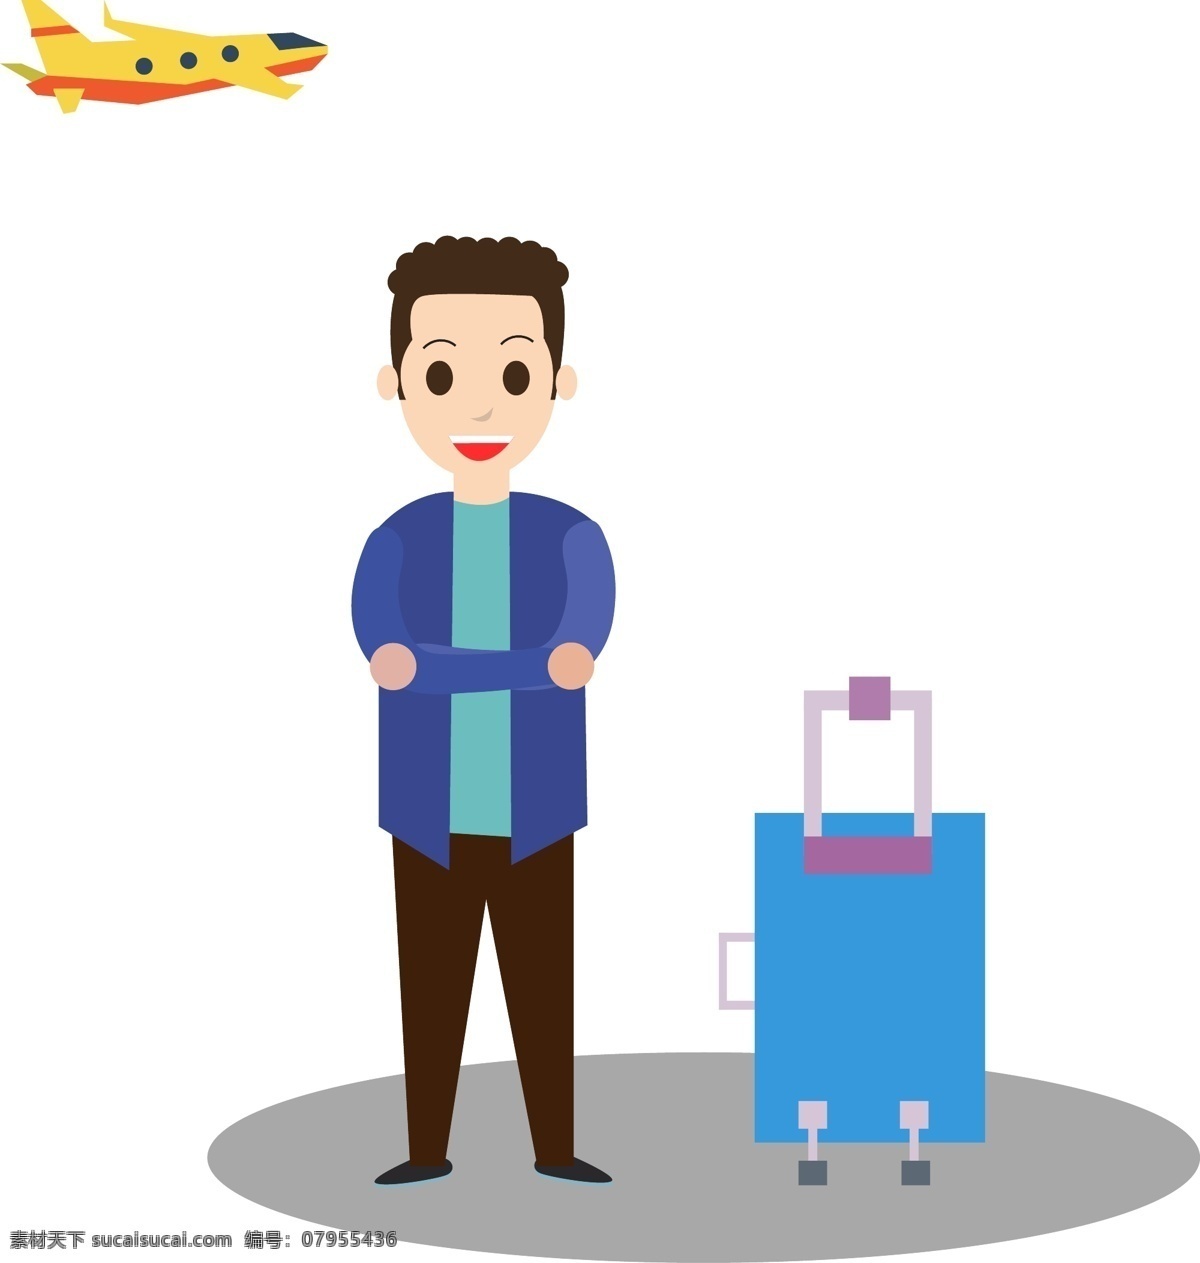 外出 行李箱 矢量 卡通的 手绘的 飞机 男人 报手 阴影 旅行 外出游玩 衬衣 蓝色 紫色